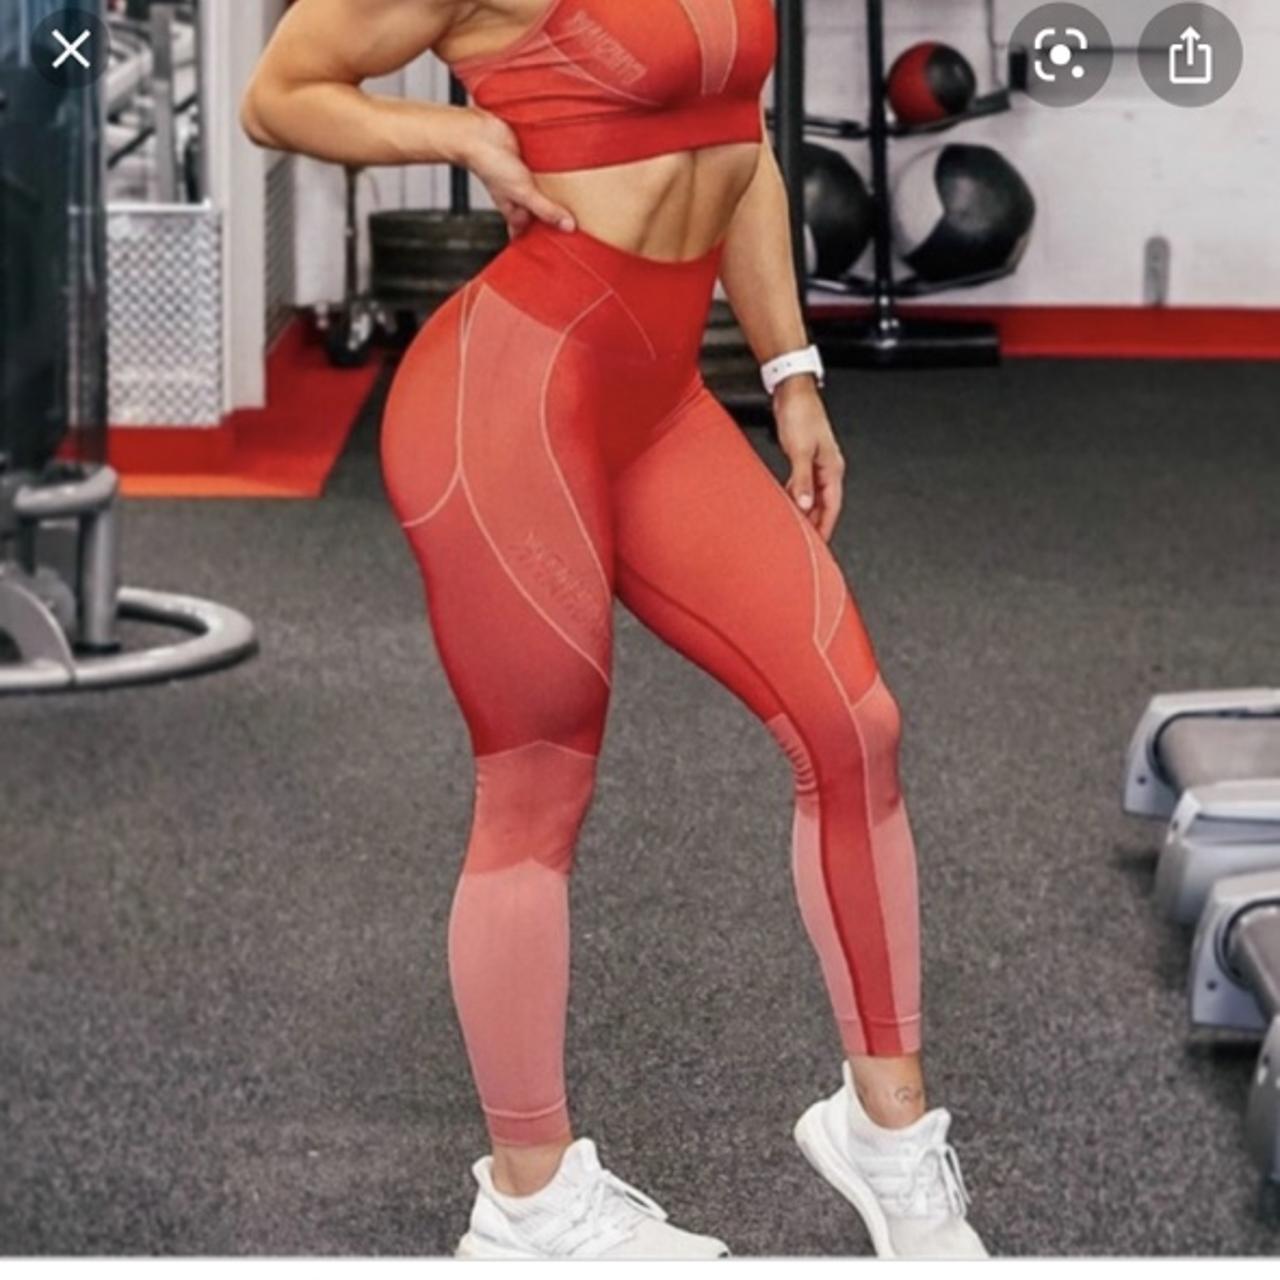 Size medium red workout leggings #workoutleggings - Depop